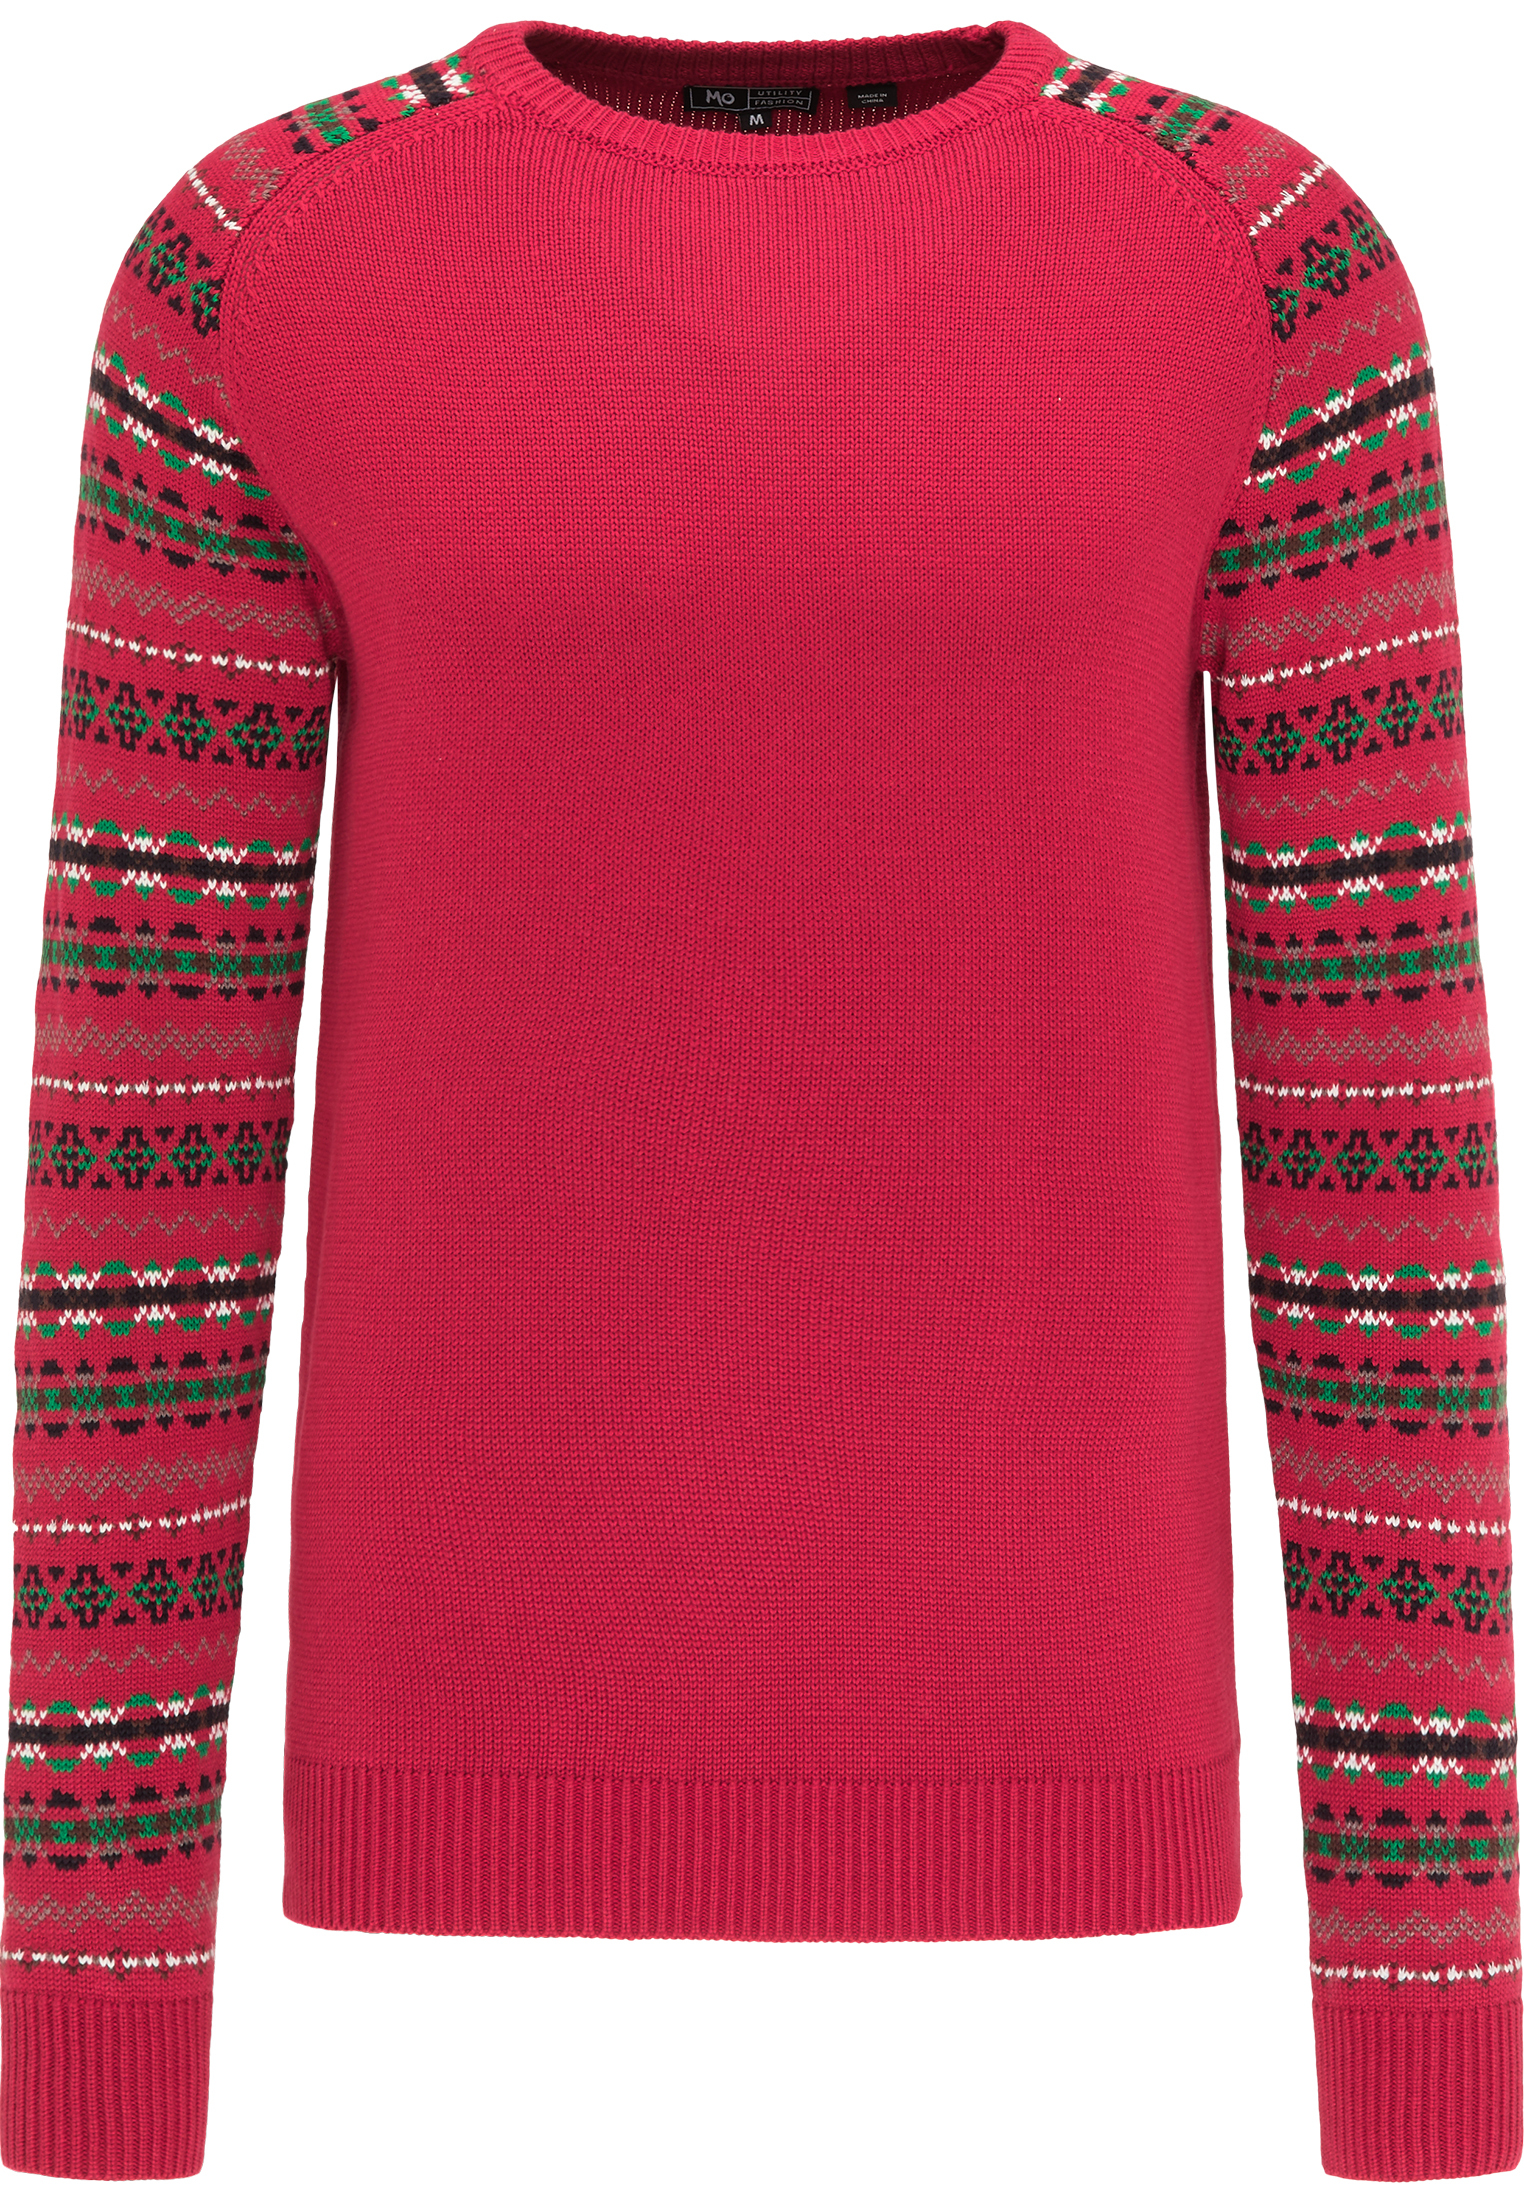 Swetry & kardigany Odzież MO Sweter w kolorze Czerwonym 